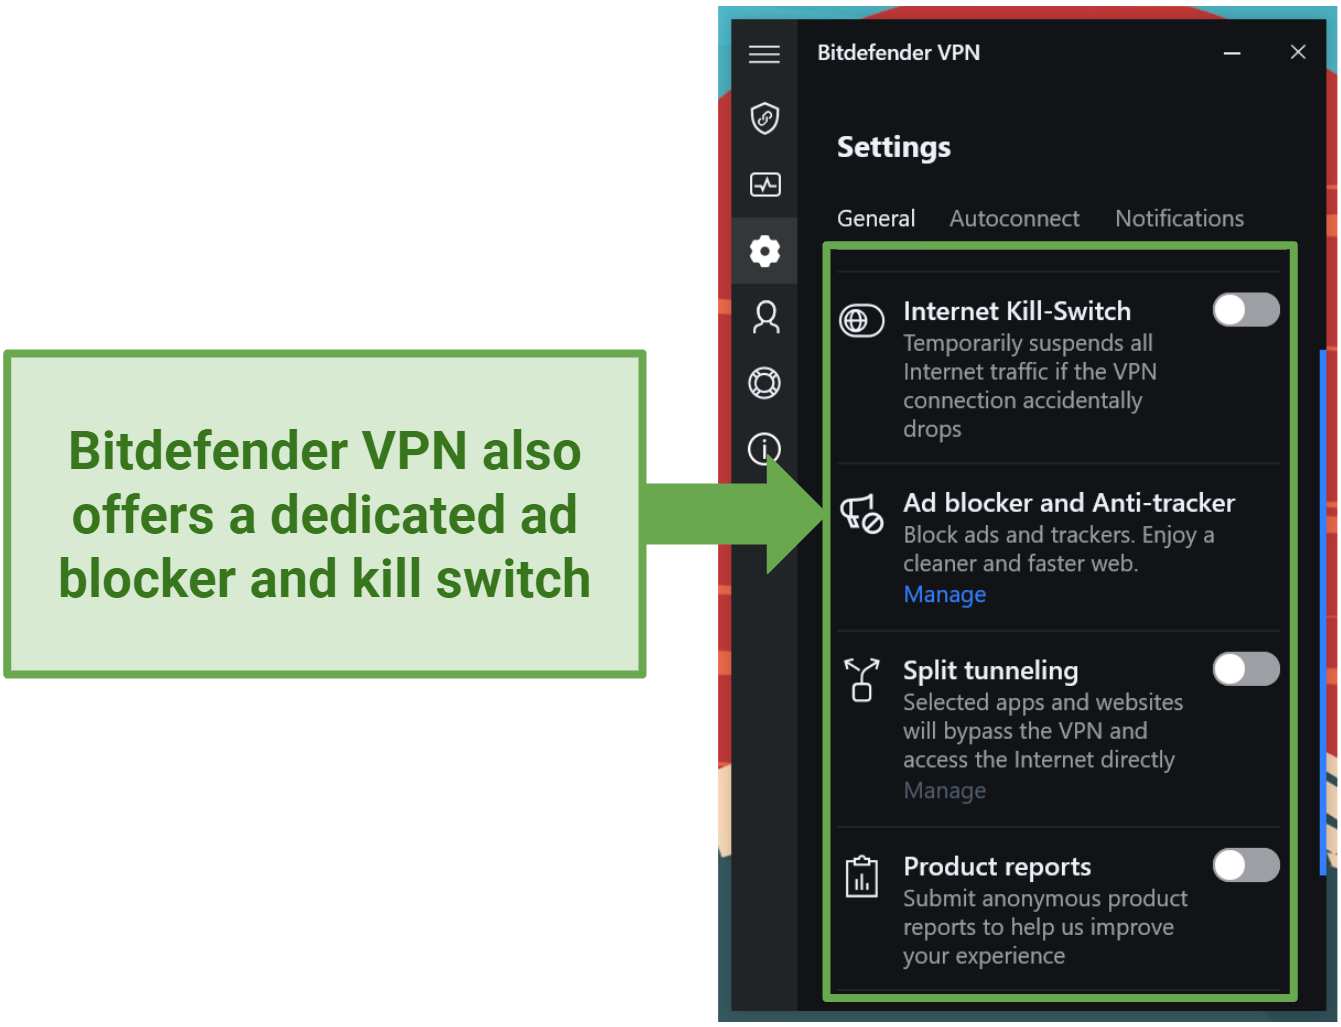 Screenshot of Bitdefender VPN's Security features